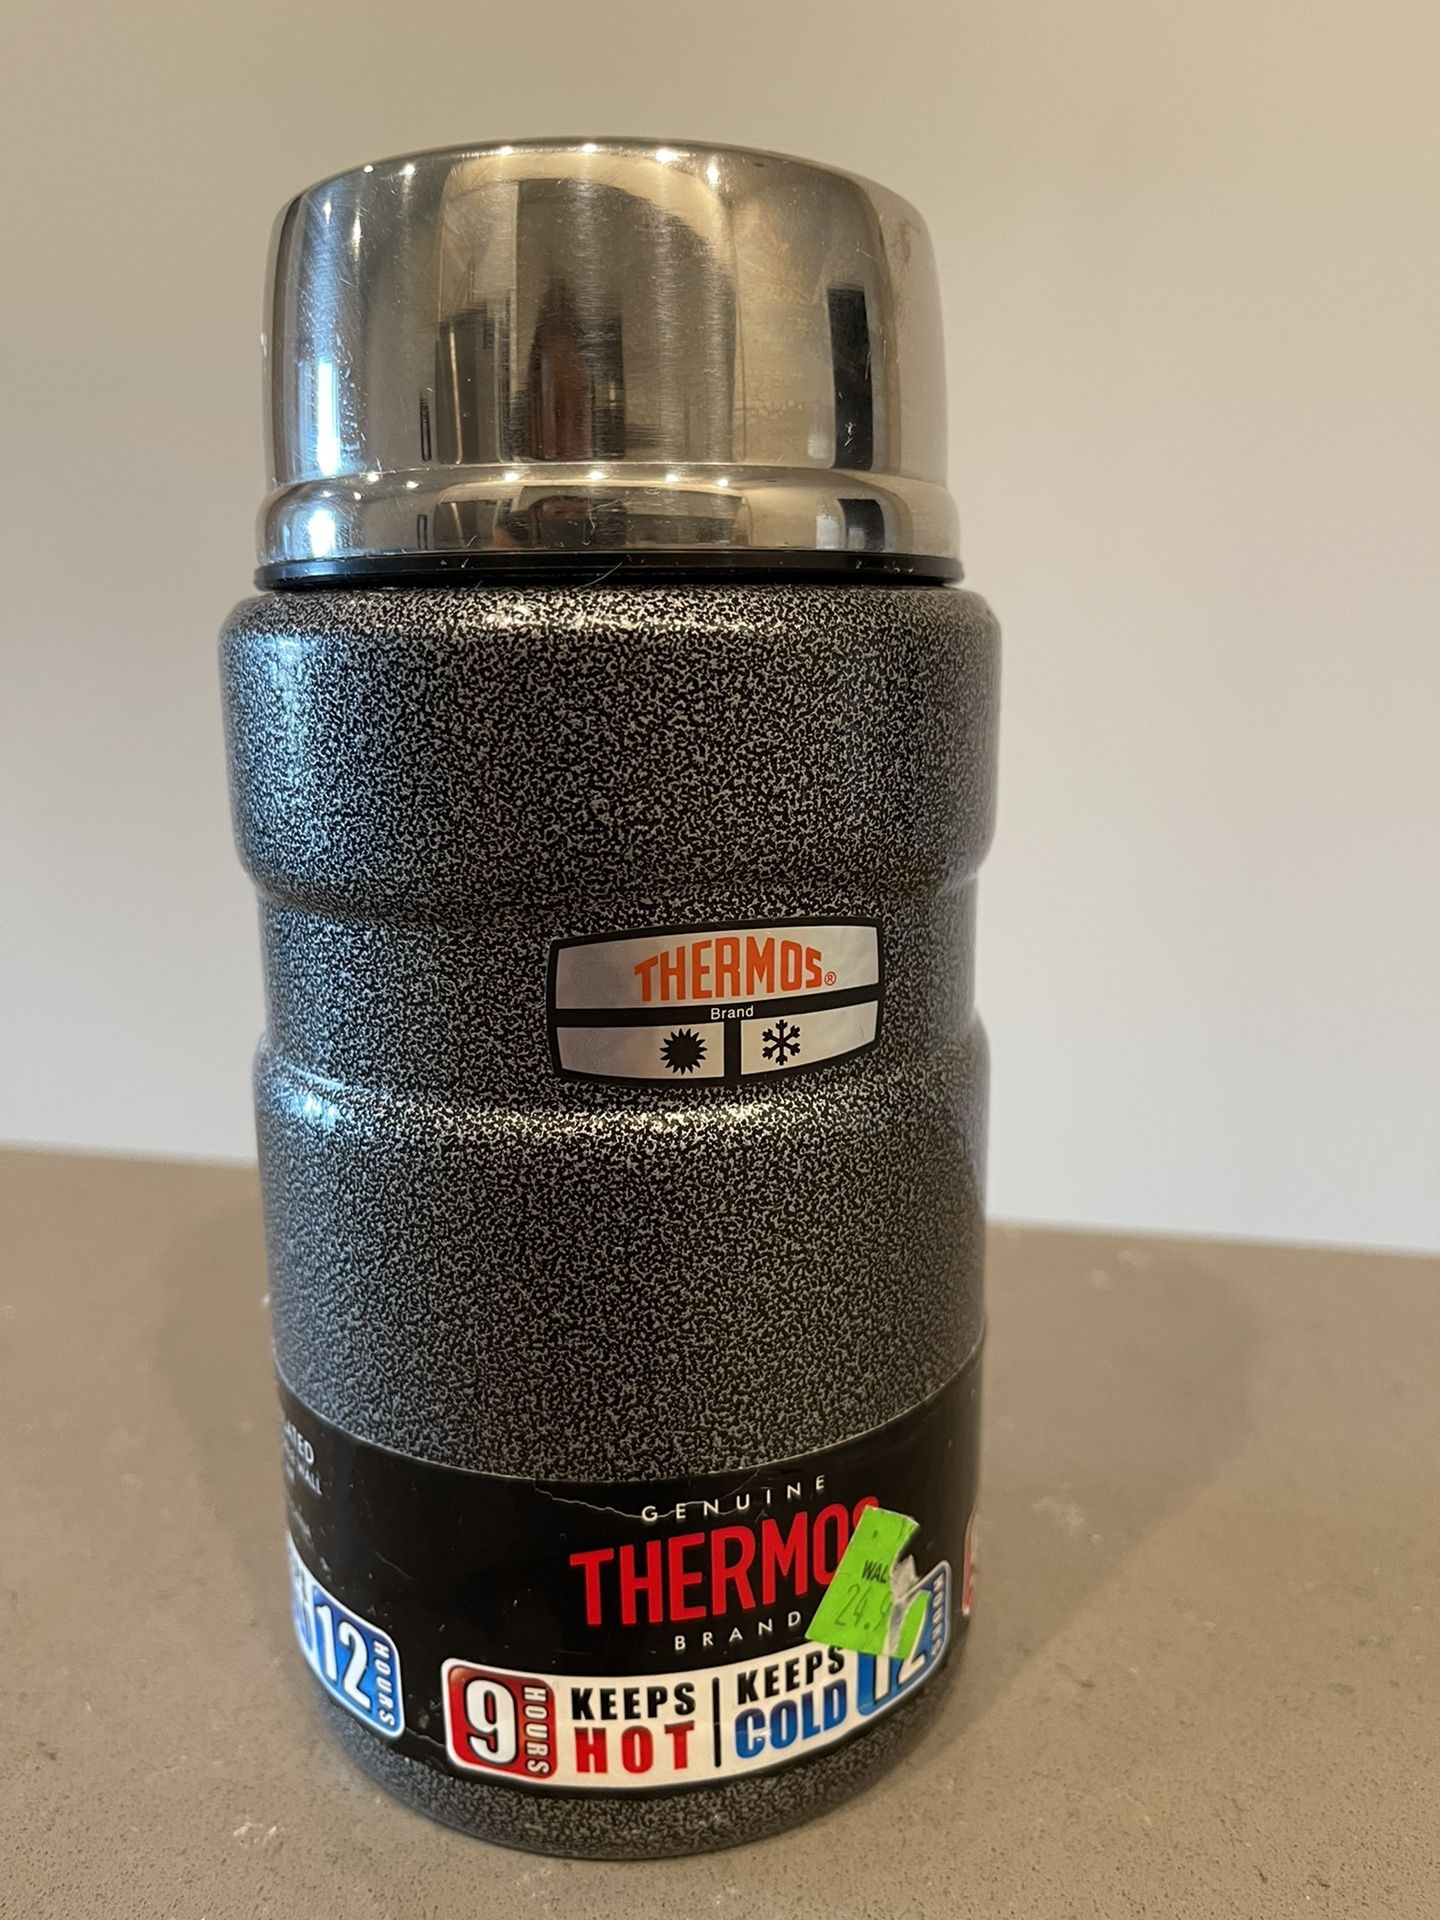 Brand new thermos mug